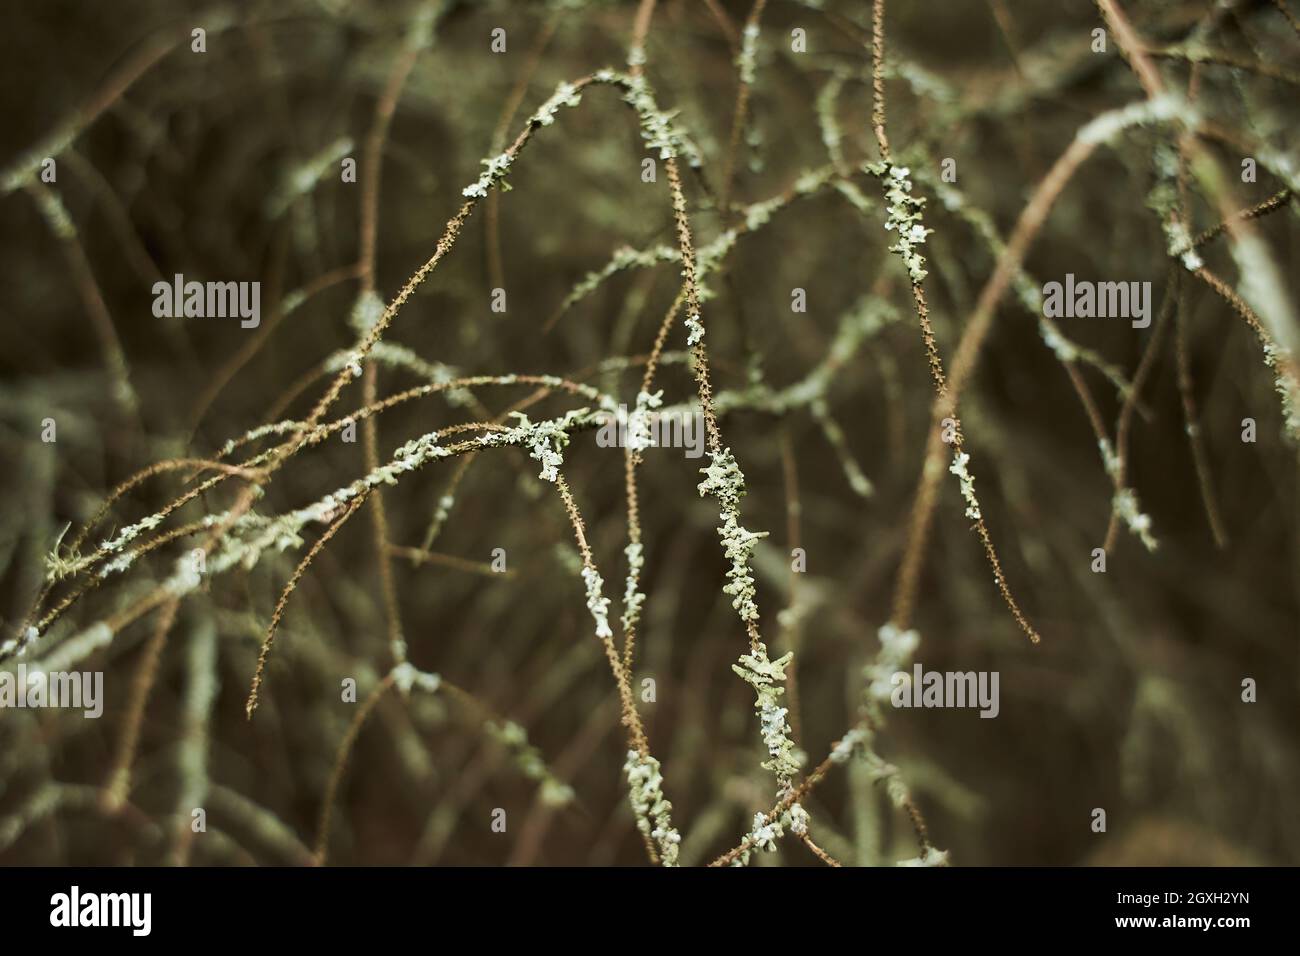 Foliose Lichen on fir branch Stock Photo